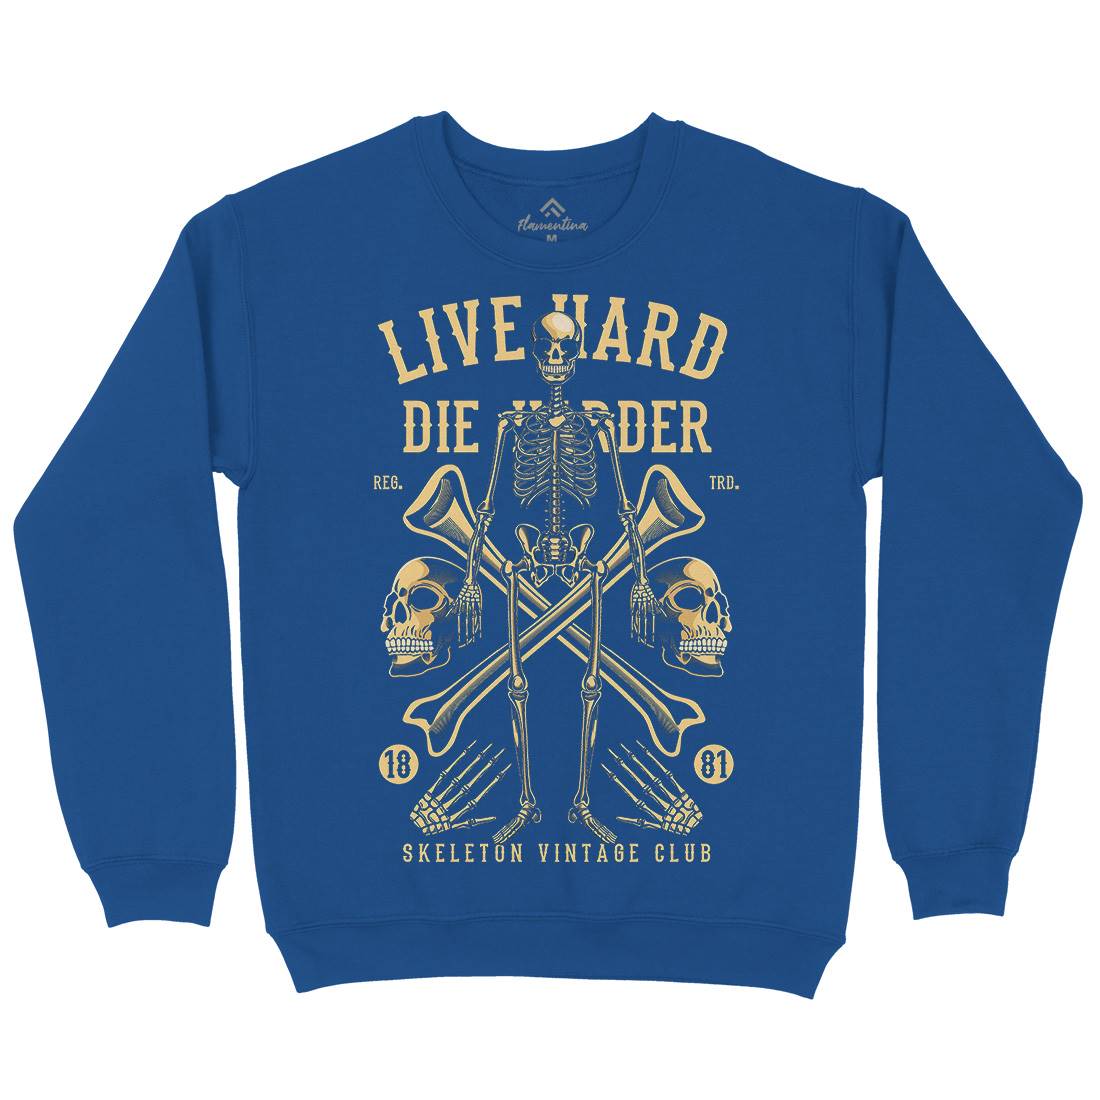 Live Hard Die Harder Mens Crew Neck Sweatshirt Retro C387